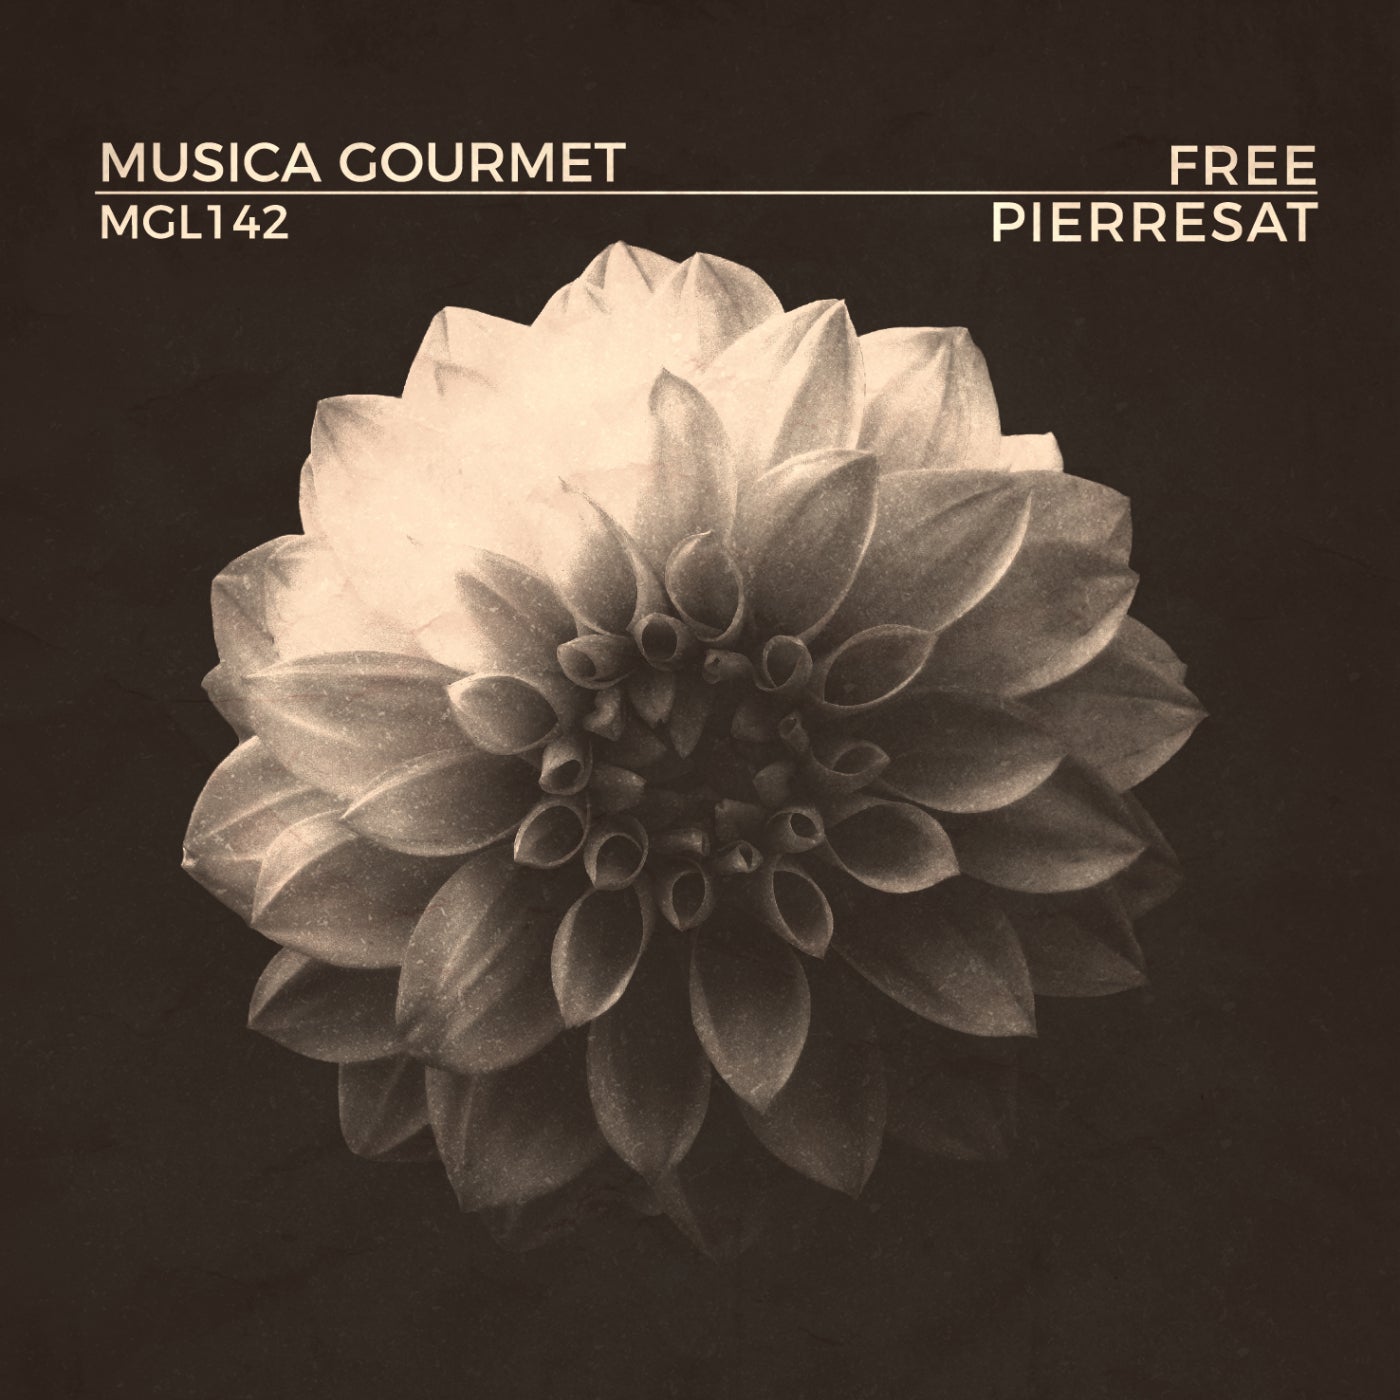 Pierresat – Free [MGL142]